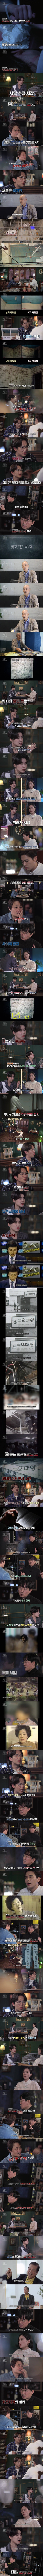 1987년 대전.......천장에서 발견된 32구의 시신..jpg | 인스티즈